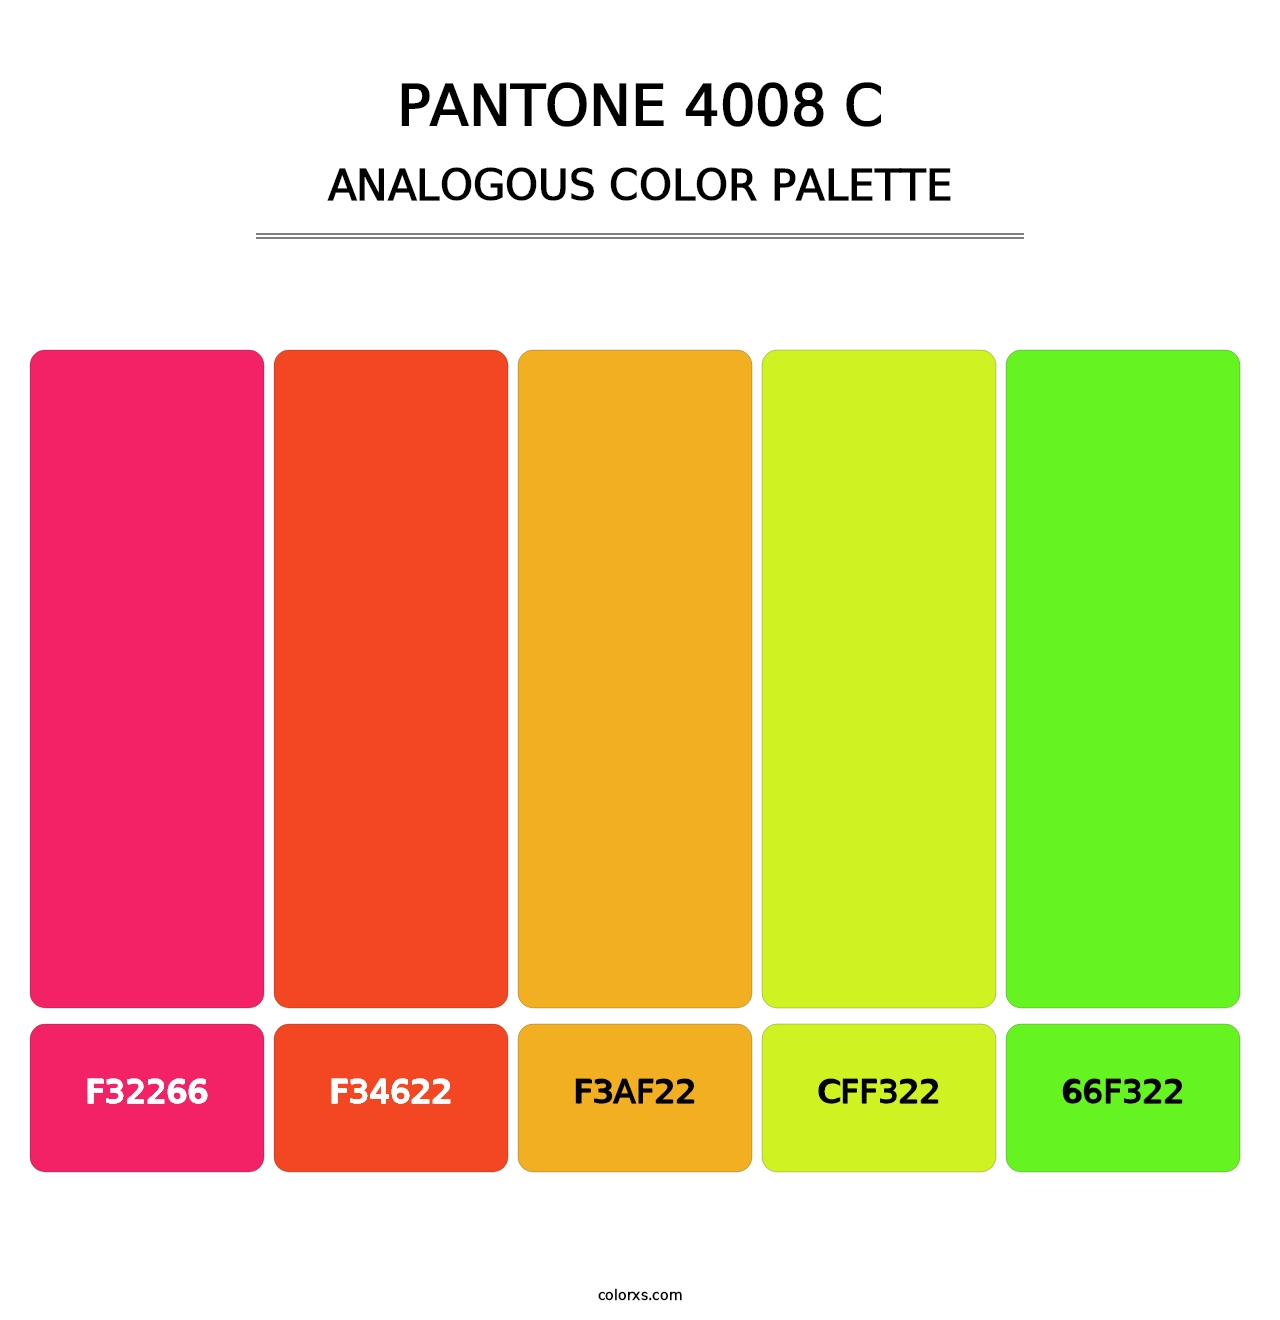 PANTONE 4008 C - Analogous Color Palette